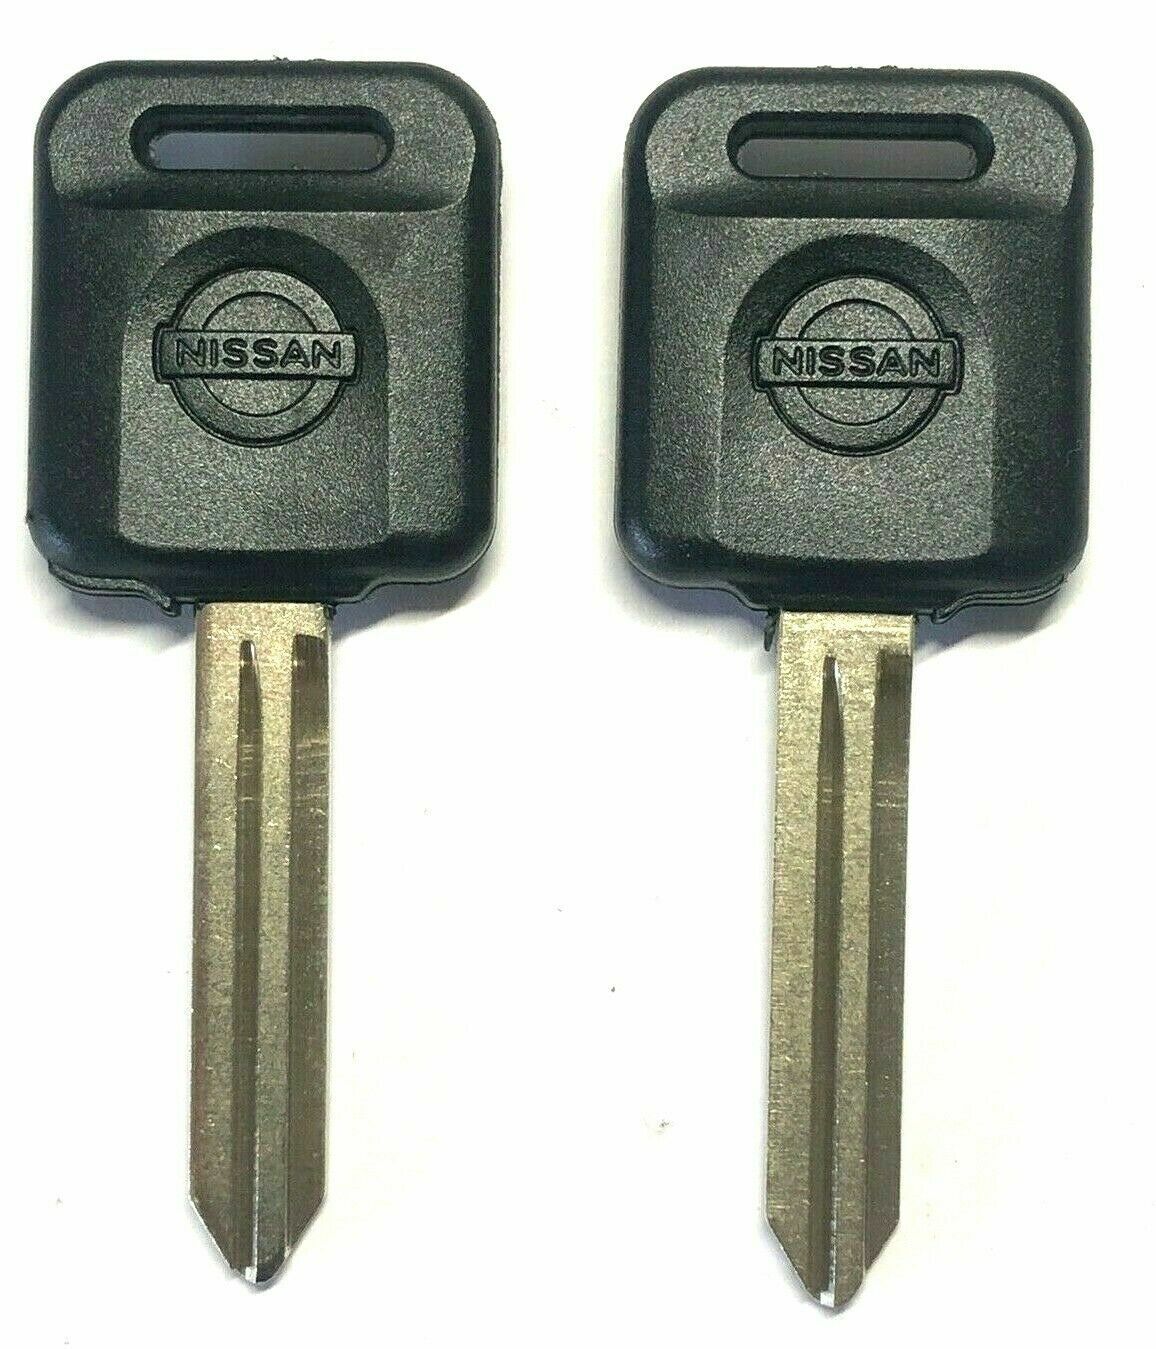 2 NEW For Nissan Altima Transponder Chip Key 46 chips N104  